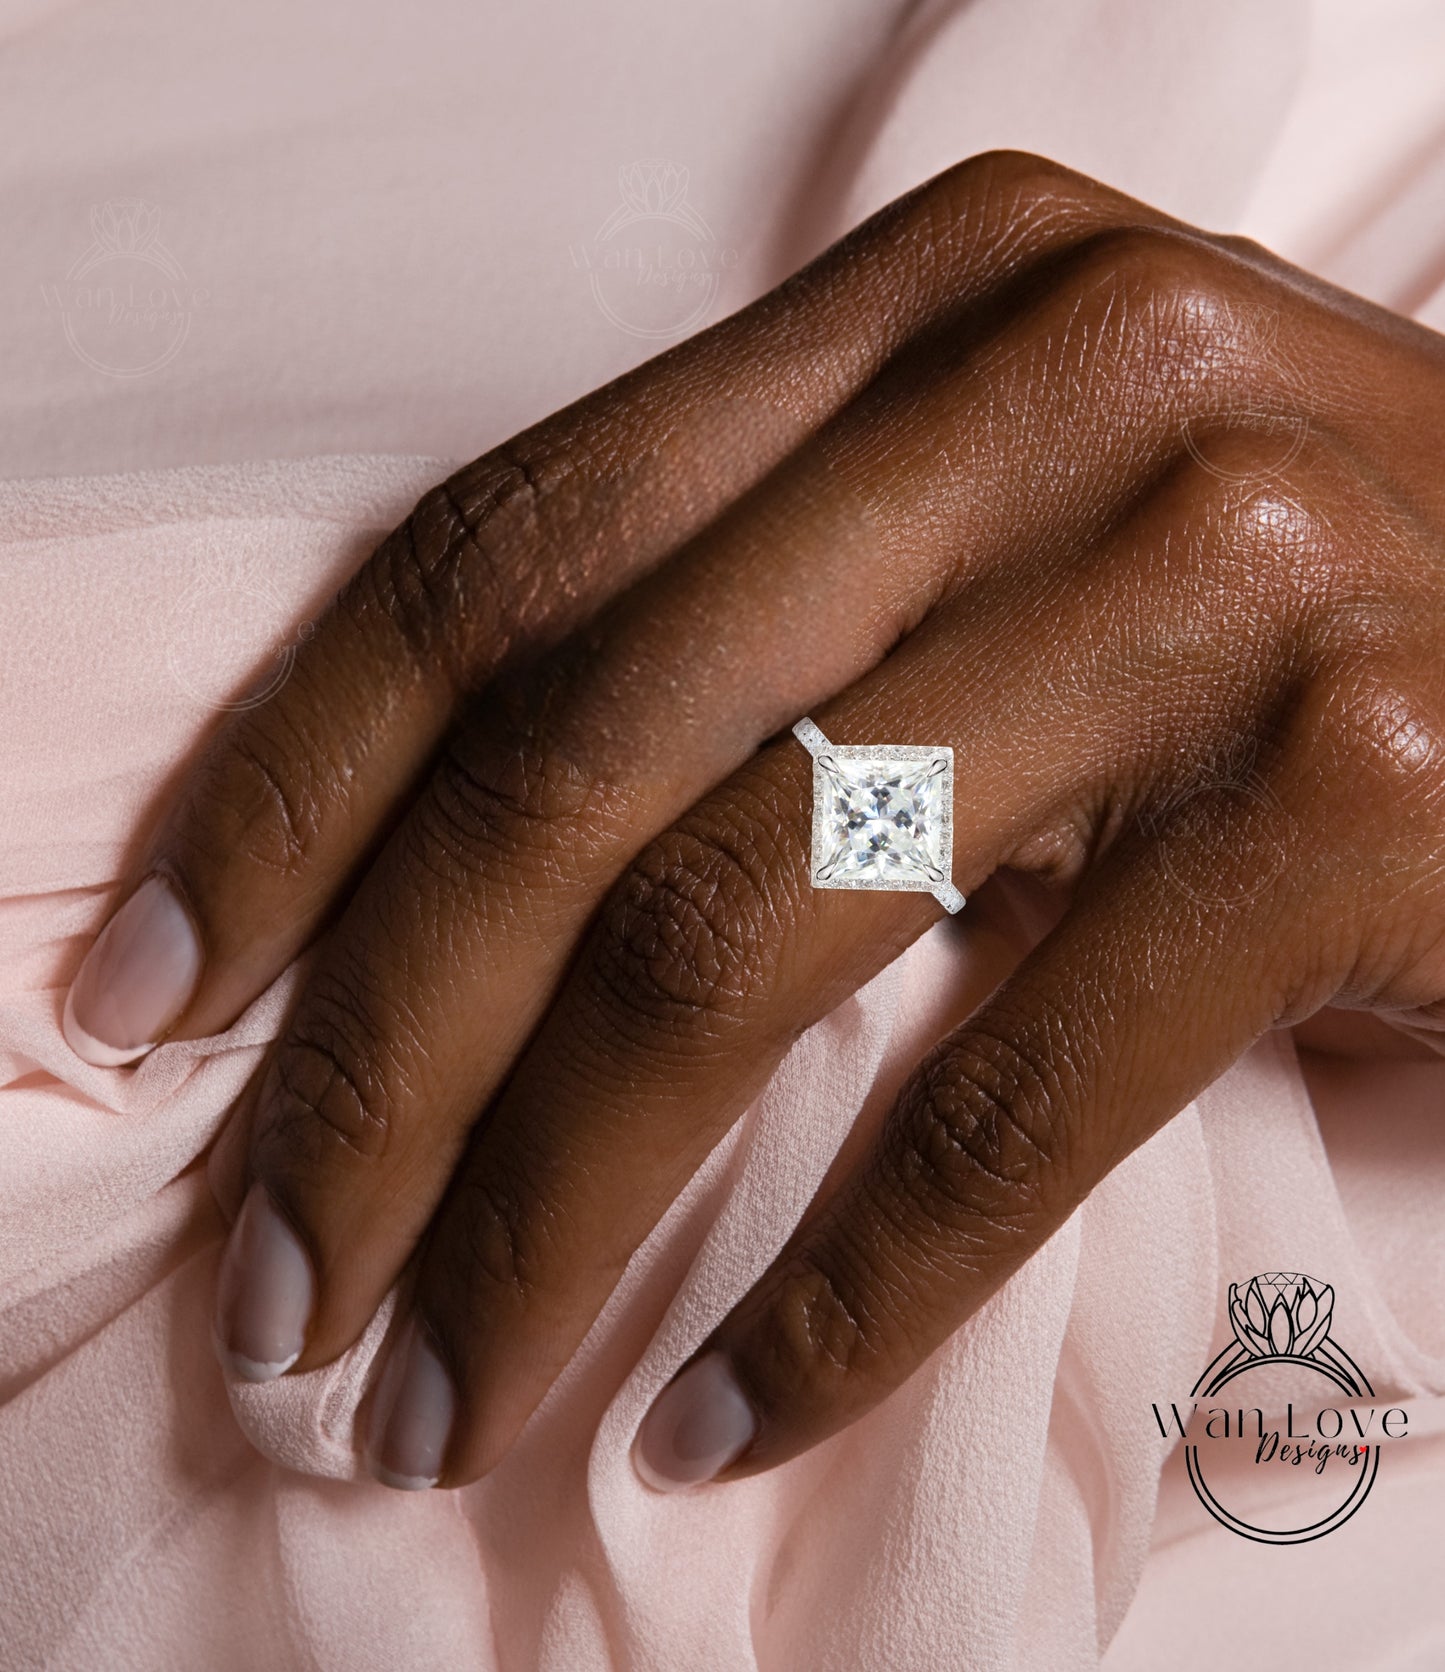 Kite set Princess Diamond halo Ring, Moissanite Diamond Princess cut Ring, Geometric Square Engagement Ring, Kite Halo Moissanite Ring